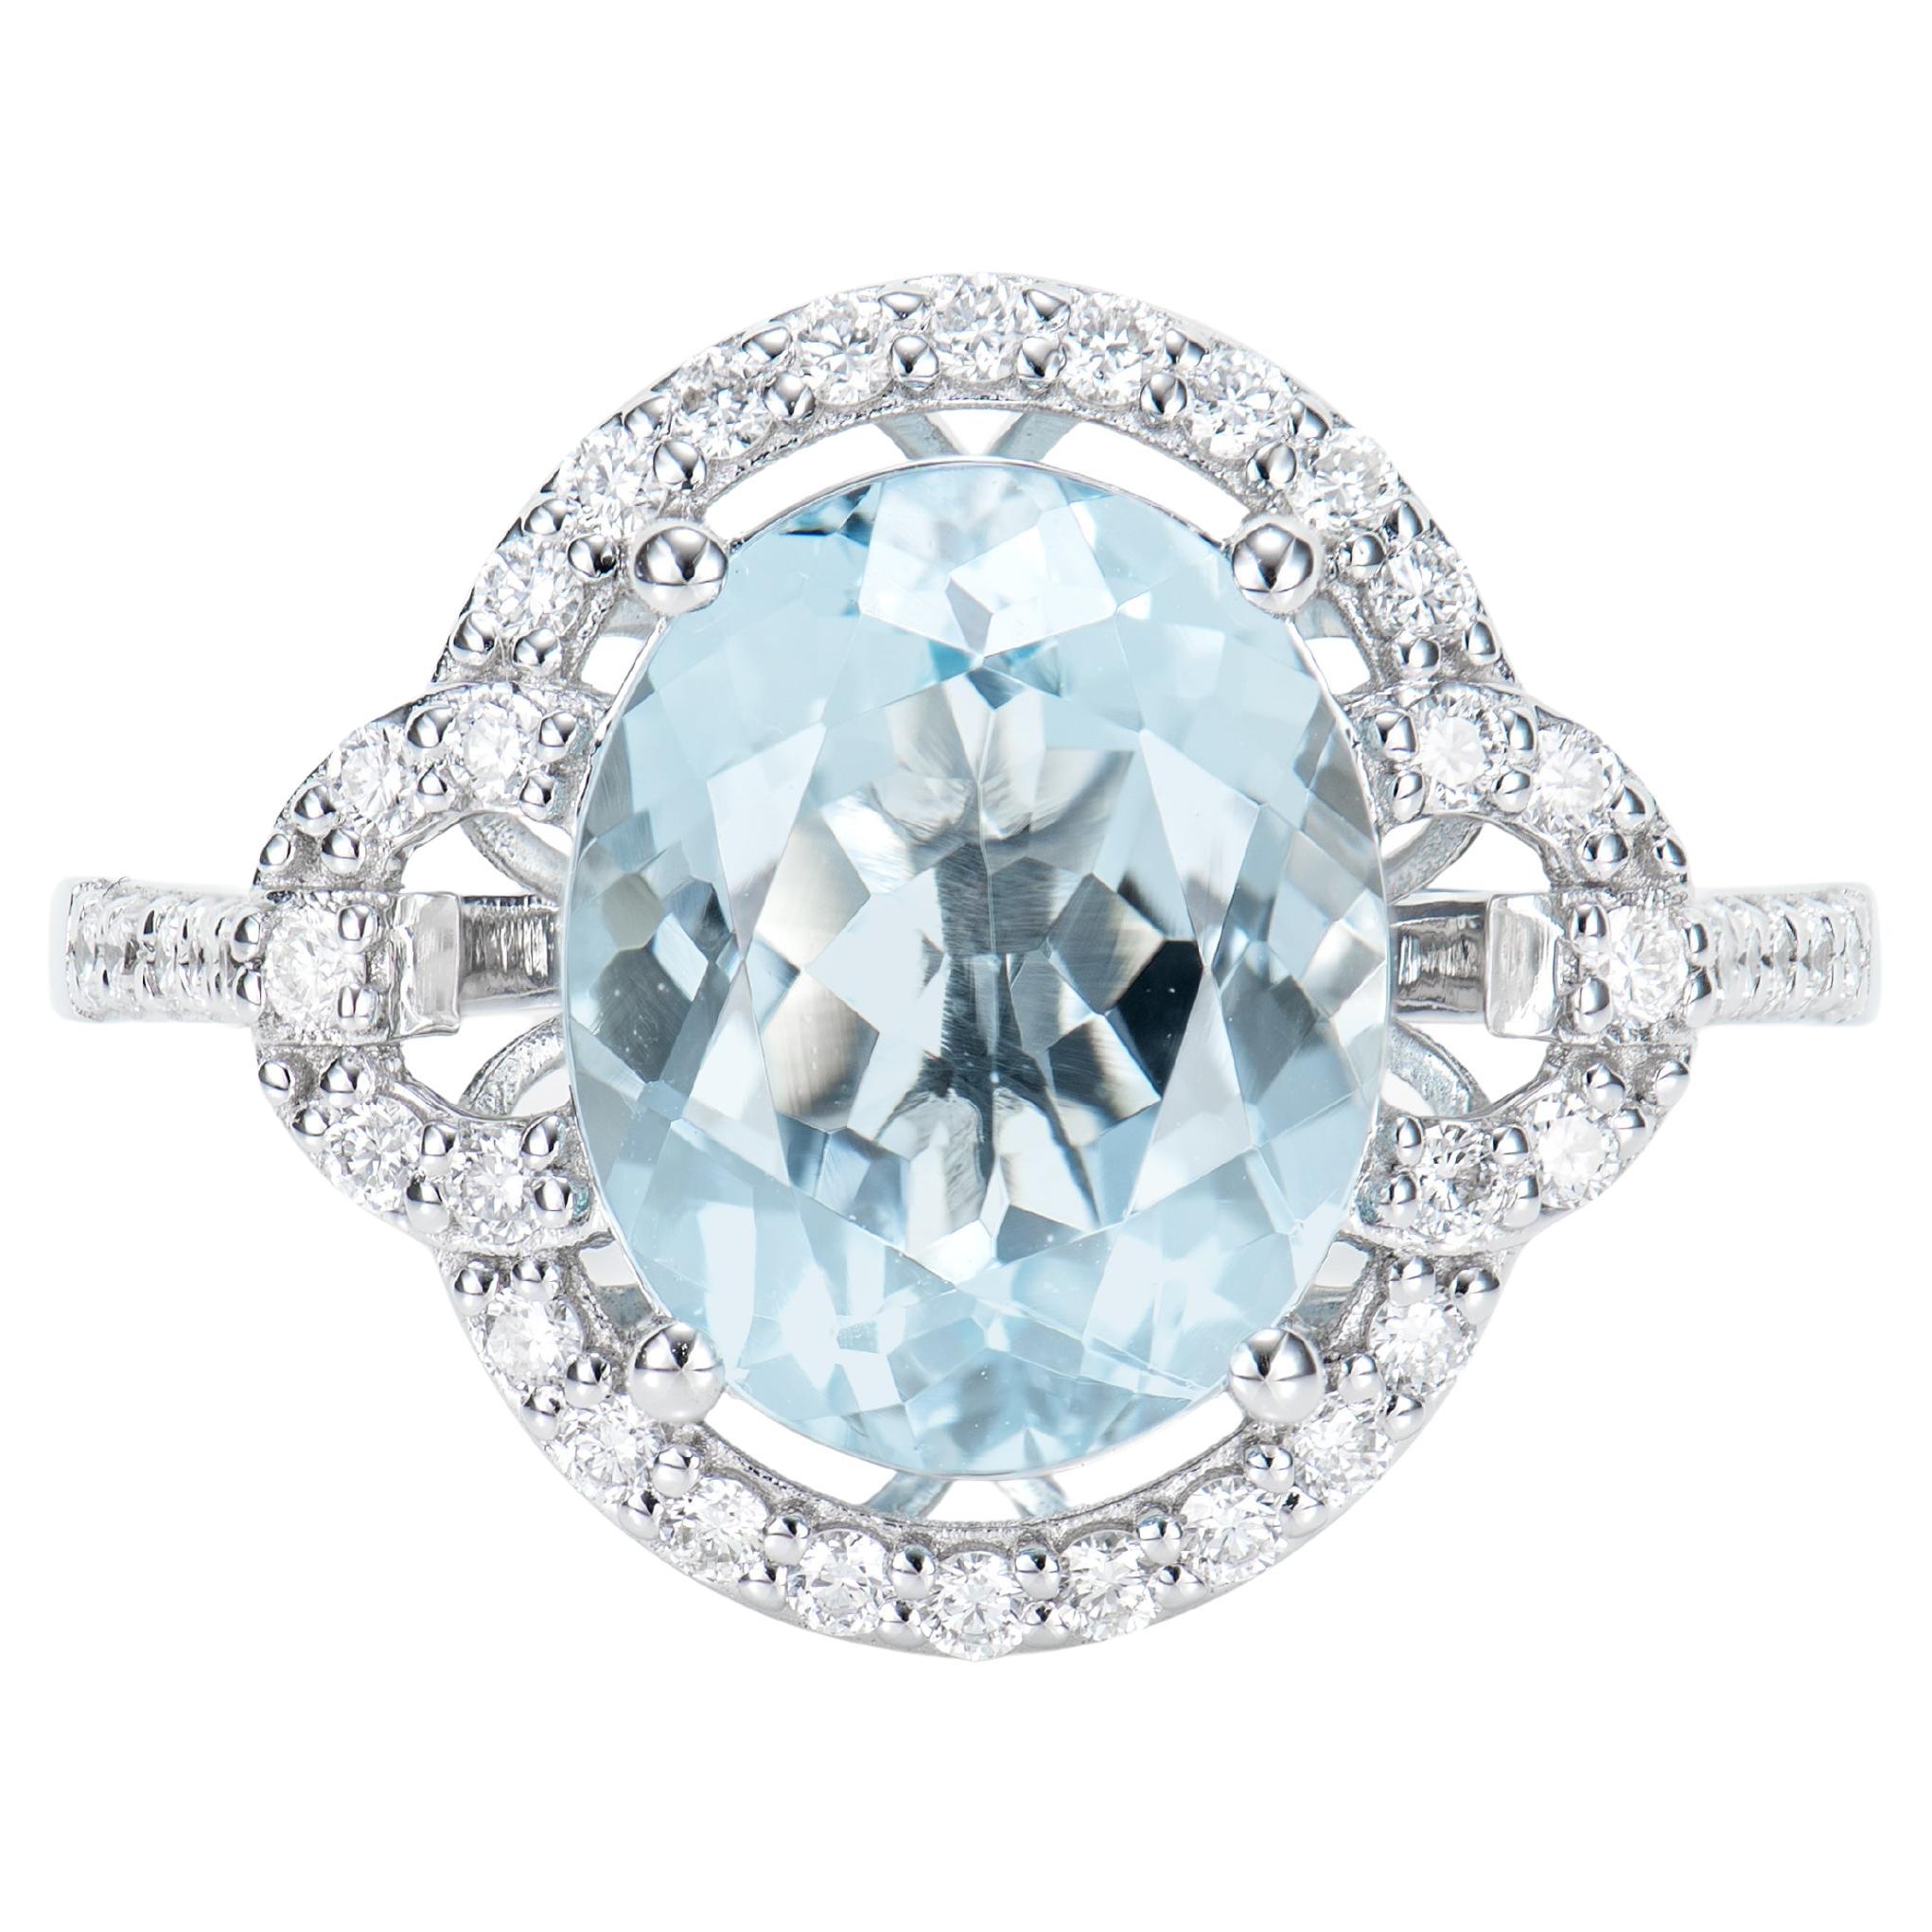 3.26 Carat Aquamarine Elegant Ring in 18 Karat White Gold with White Diamond